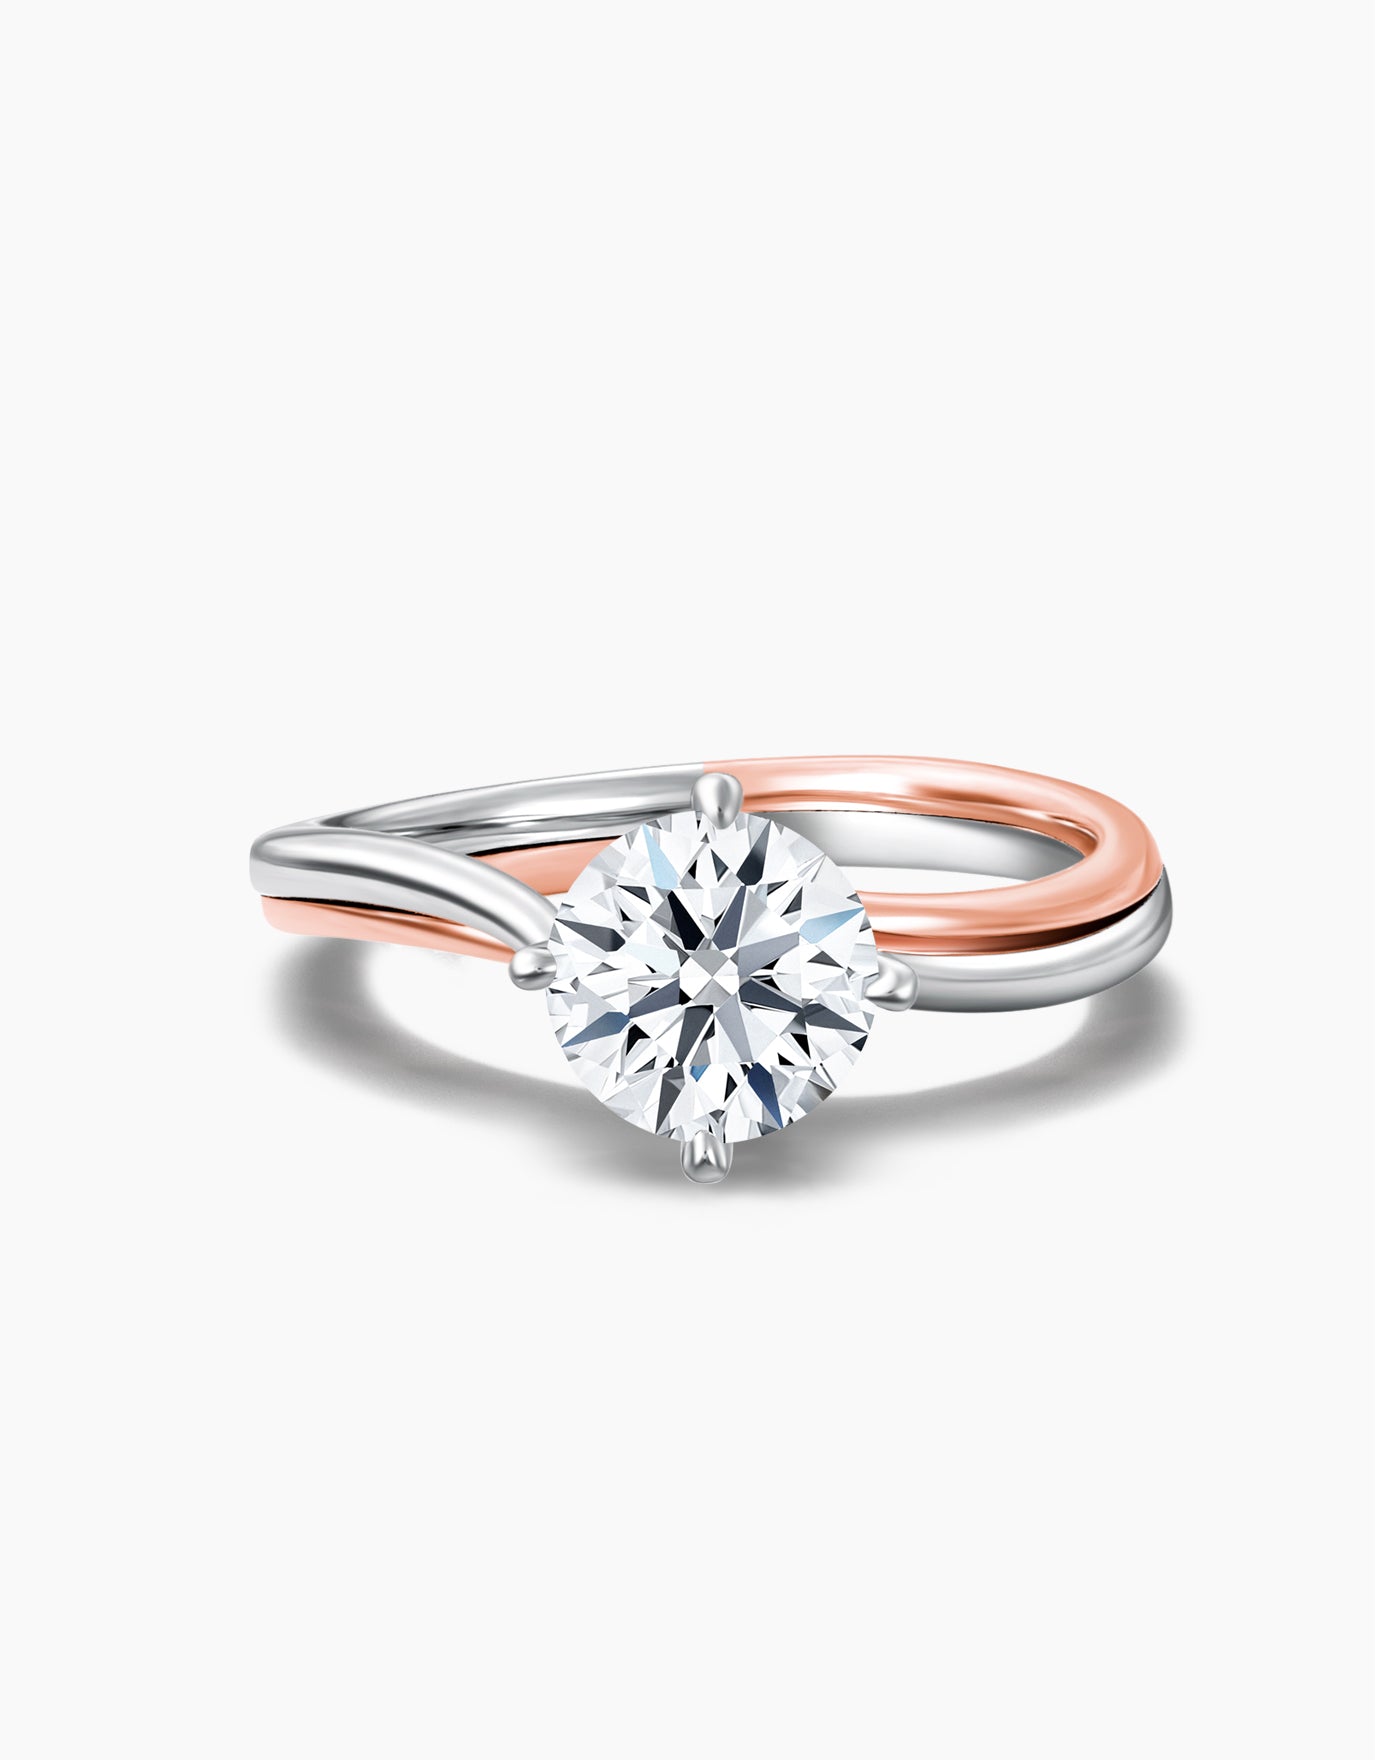 LVC Precieux Noeud Diamond Ring